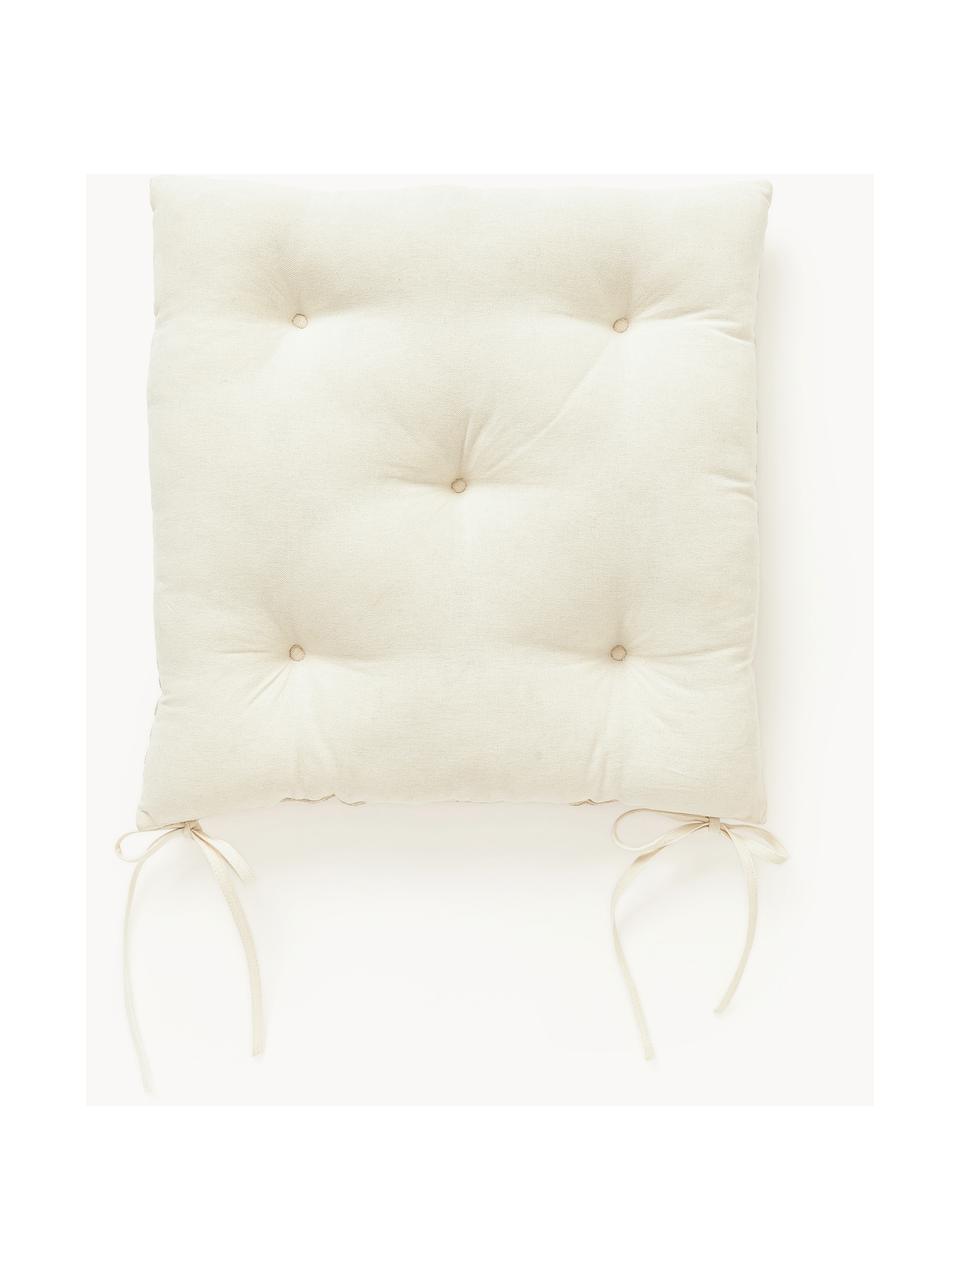 Coussin d'assise en coton avec décoration graphique Sevil, Blanc cassé, blanc crème, larg. 40 x long. 40 cm